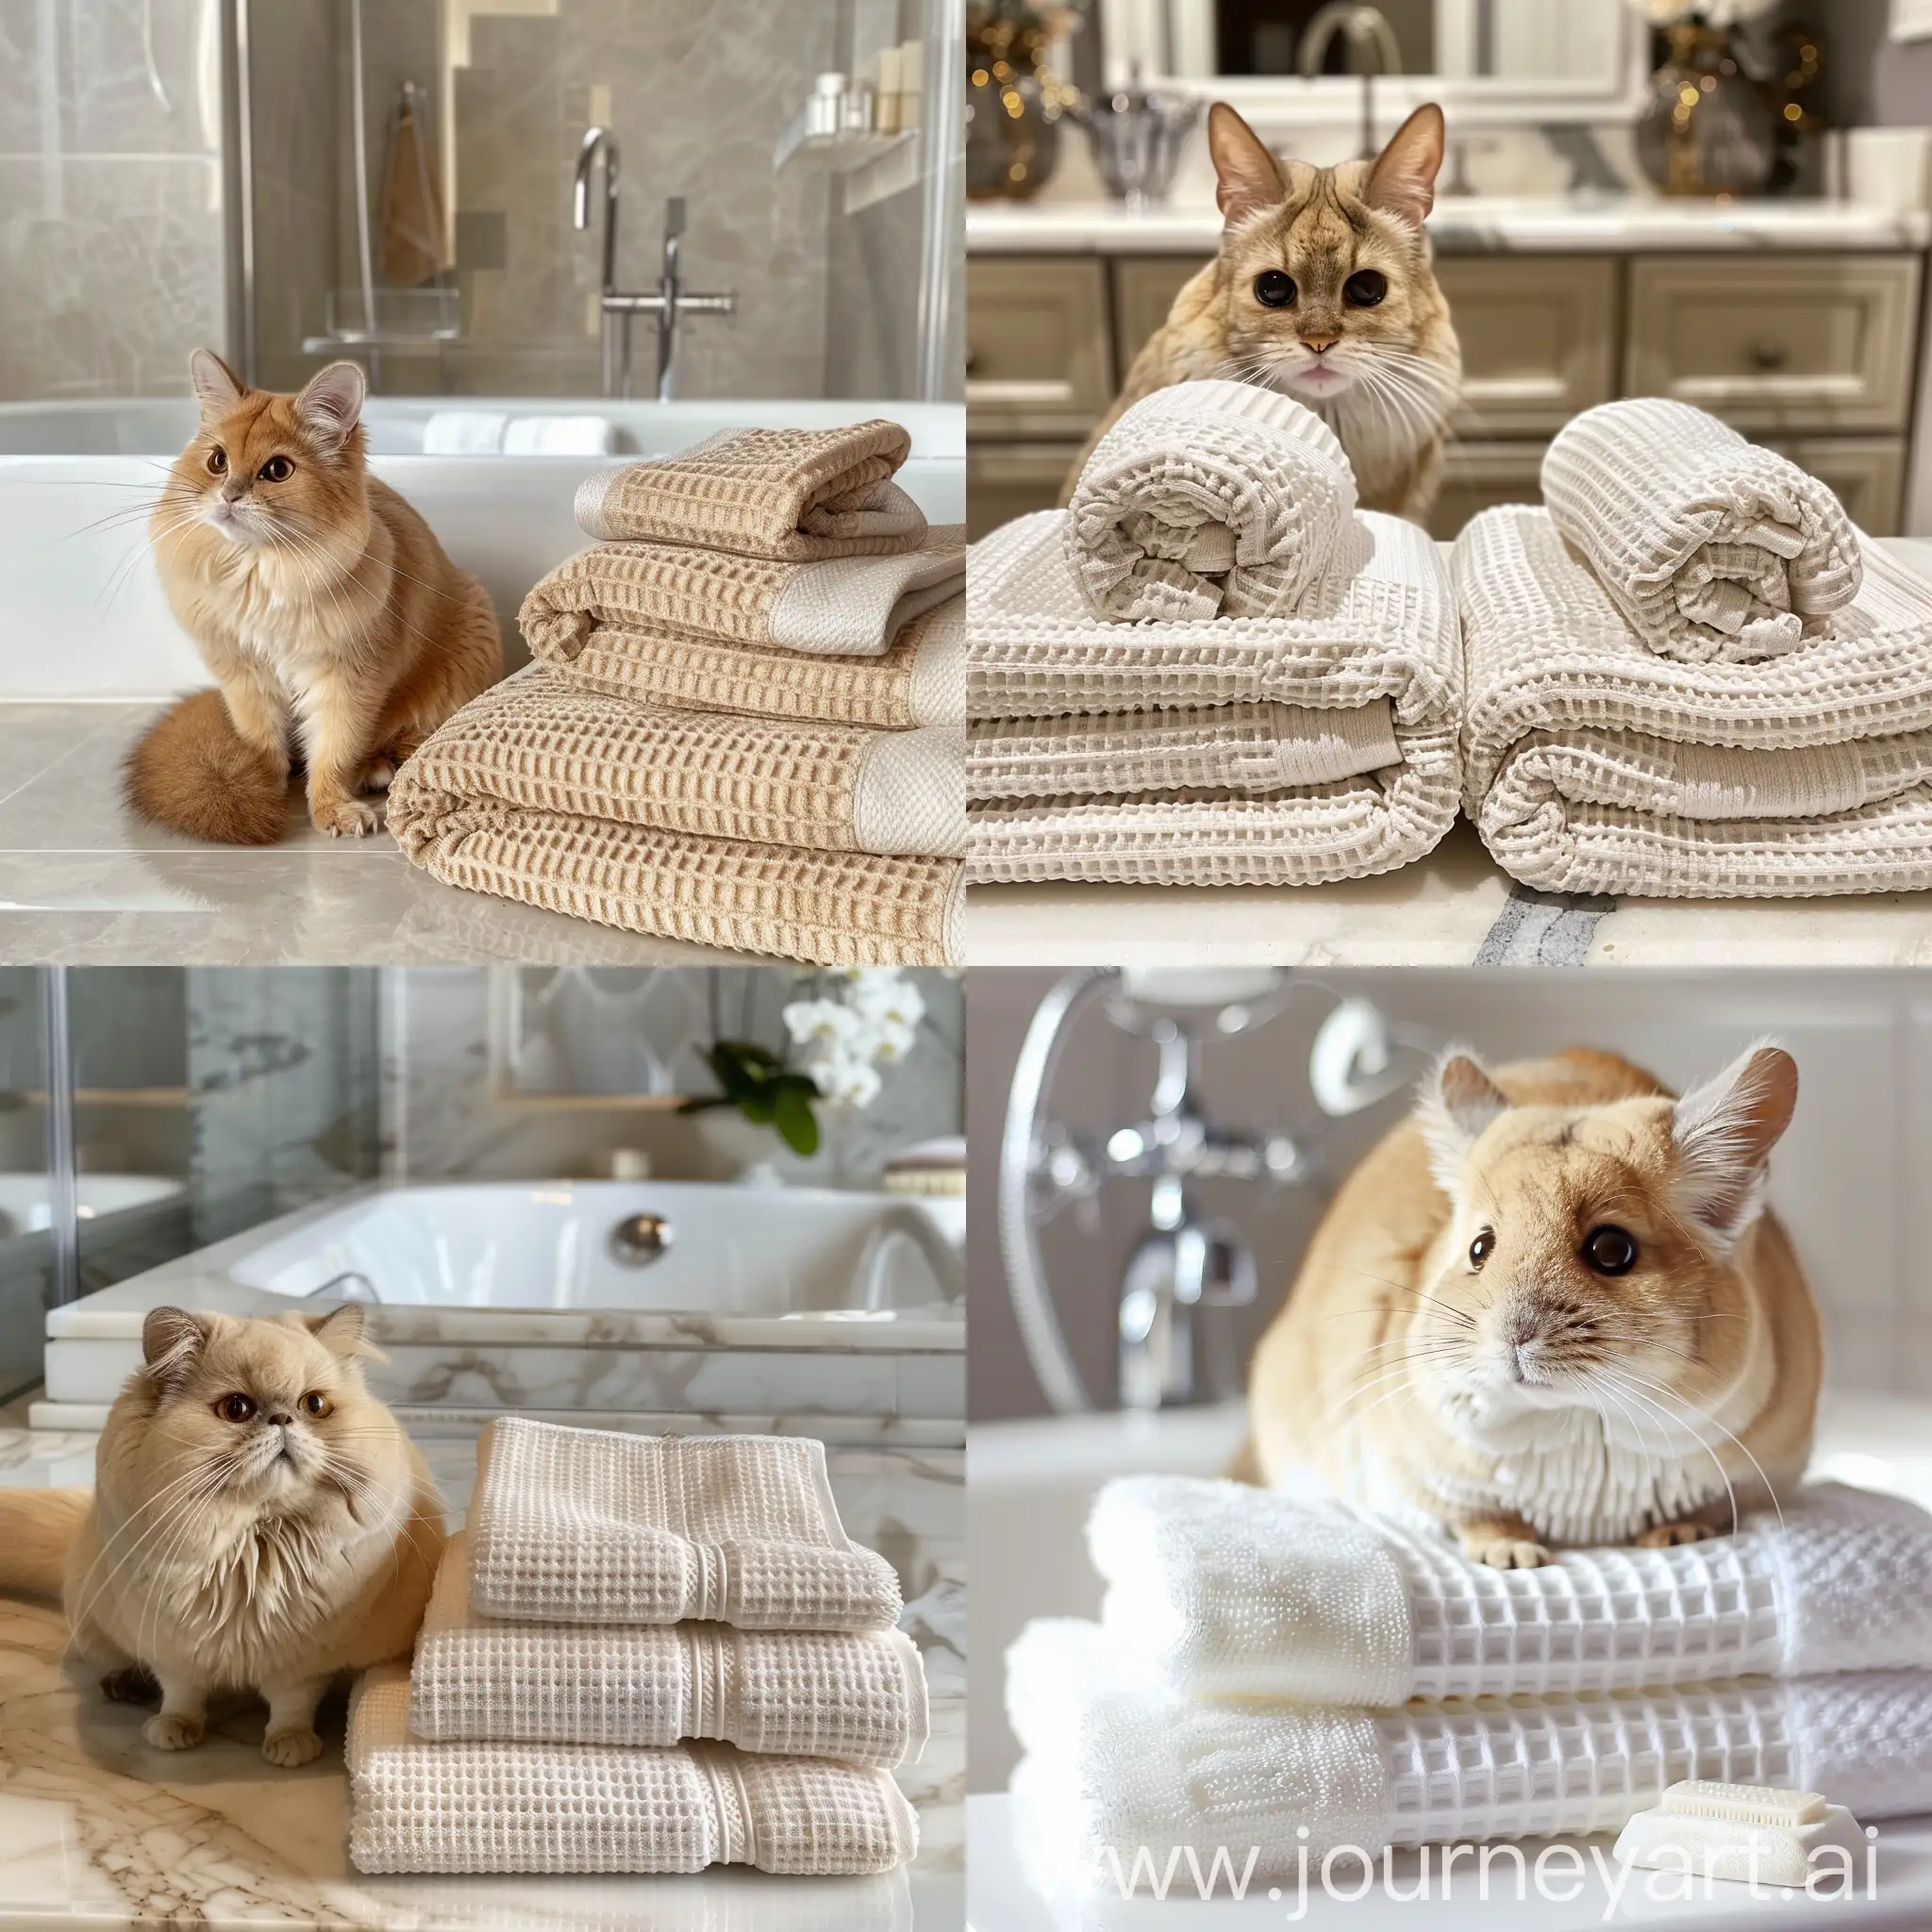 покажи кота золотую шиншилу в дорогой светлой ванной комнате, в которой красиво сложены вафельные полотенца